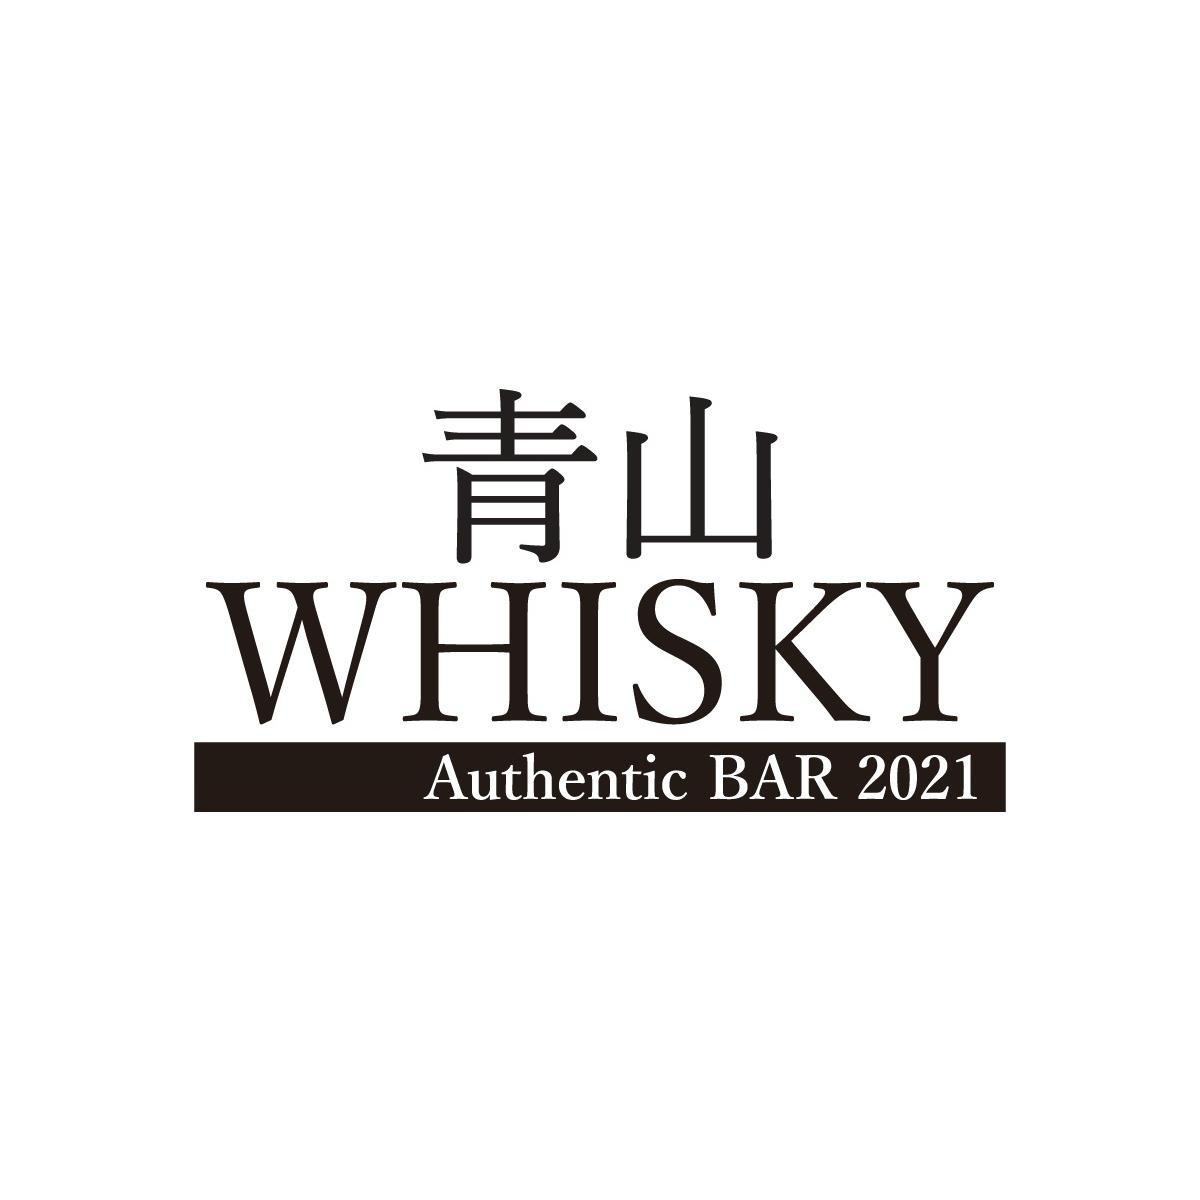 青山WHISKY Authentic BAR 2021 - Bar - 渋谷区 - 03-6450-6628 Japan | ShowMeLocal.com